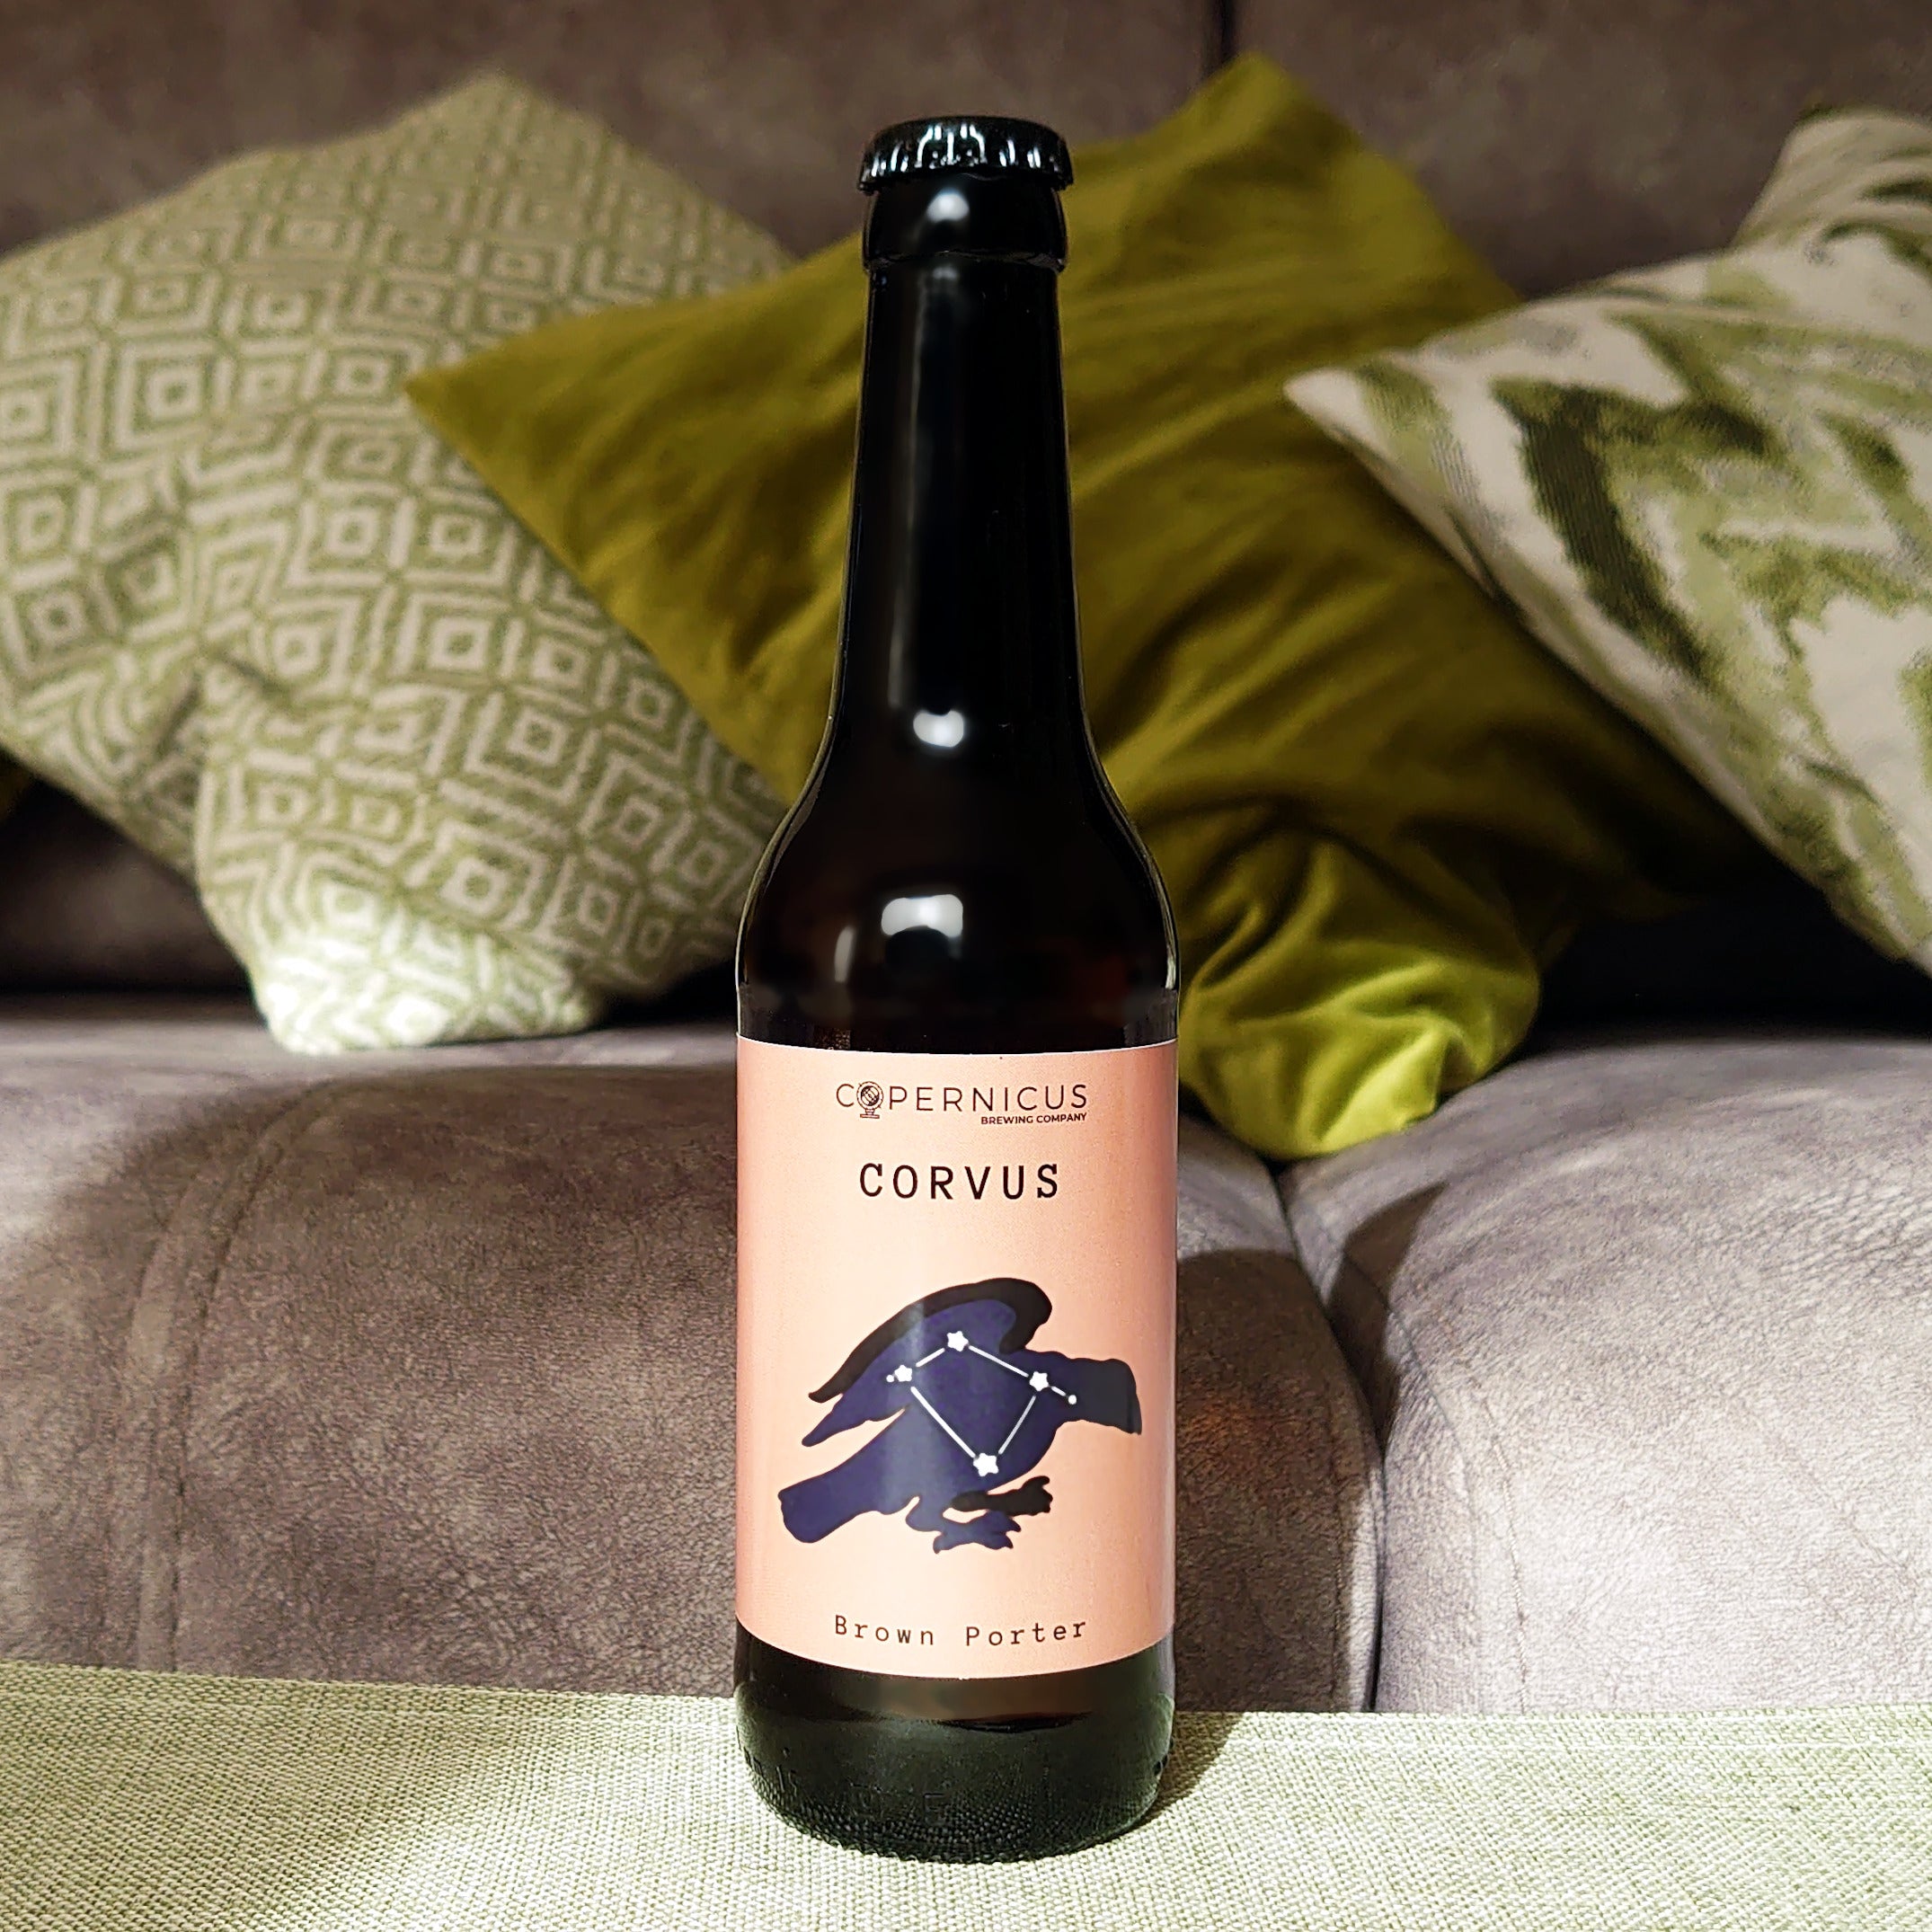 Botellín de 33cl de cerveza Copernicus Corvus - Brown Porter